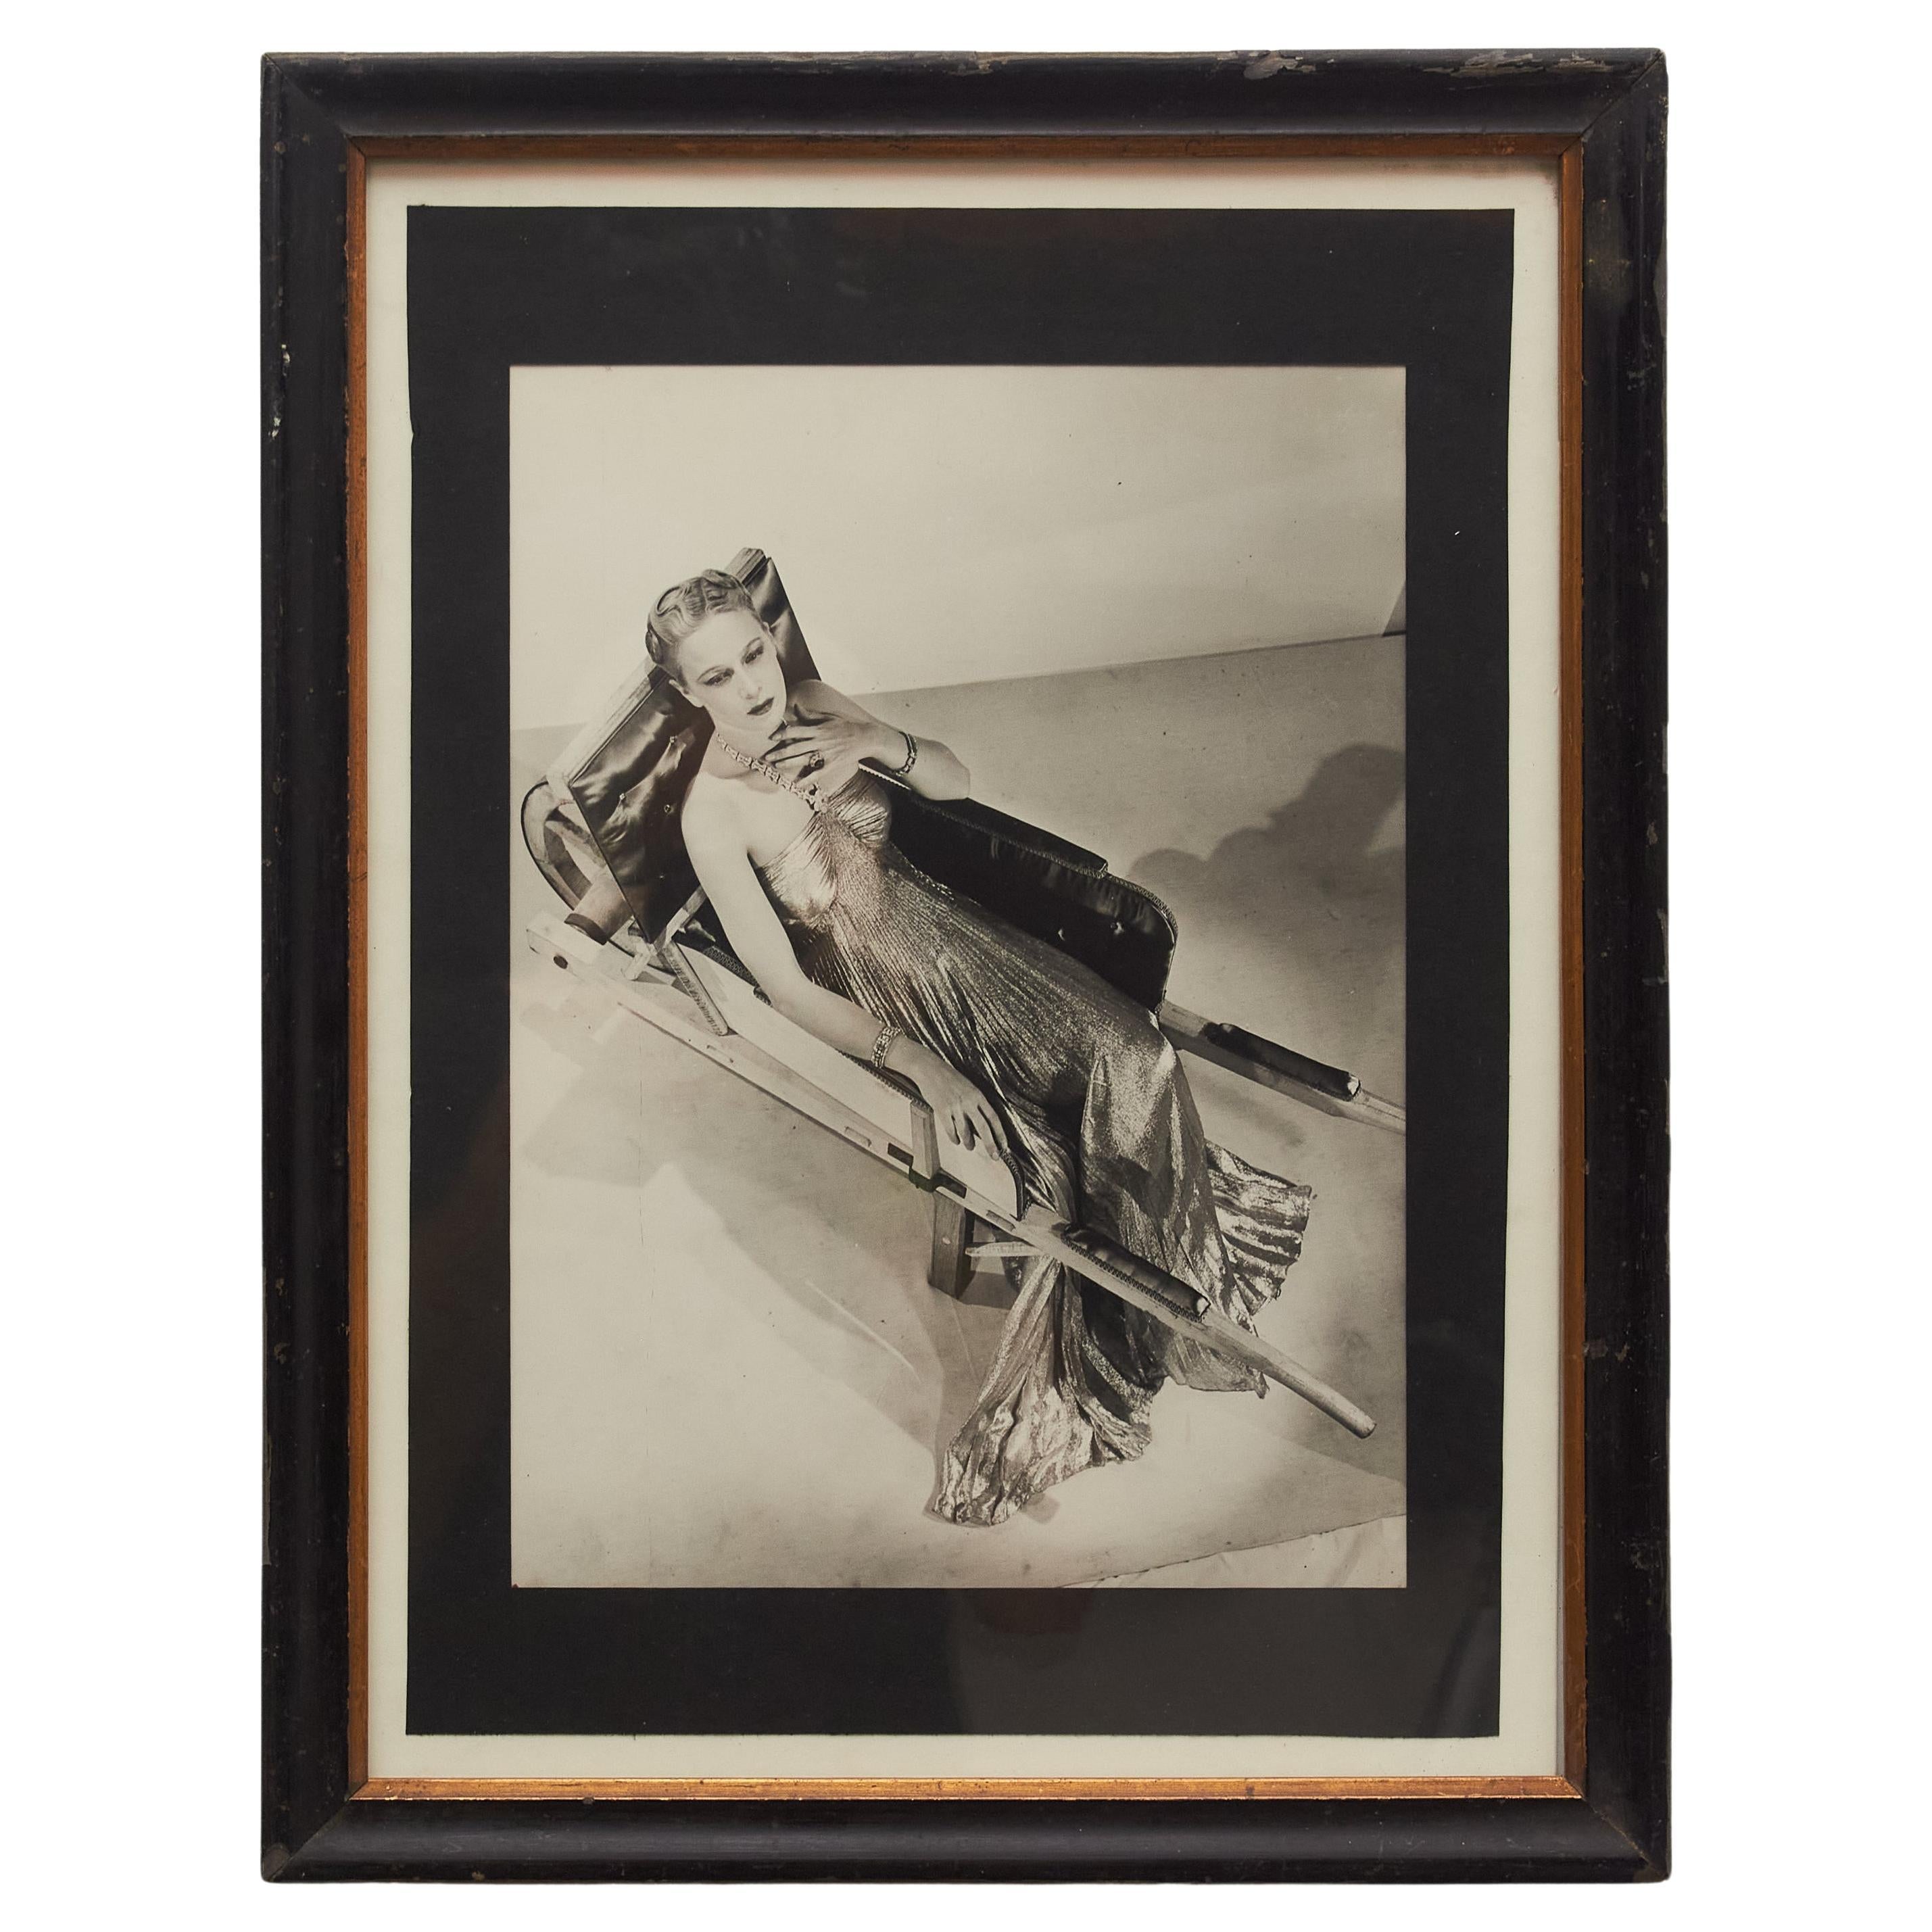 Chef-d'œuvre de Man Ray : L'Elegance Timeless en Monochrome - Photographie vintage encadrée